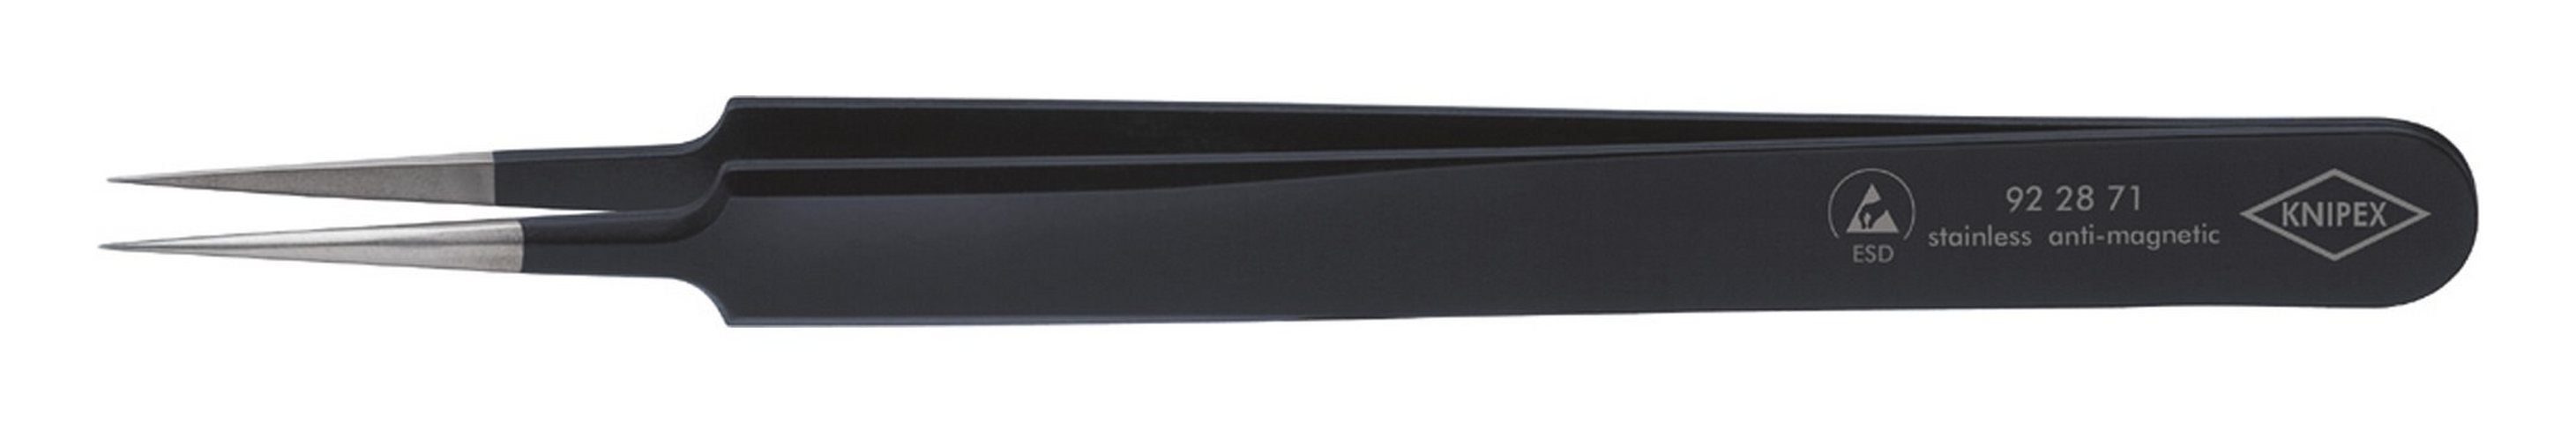 Knipex Pinzette, ESD Nadelform 110 mm schwarz